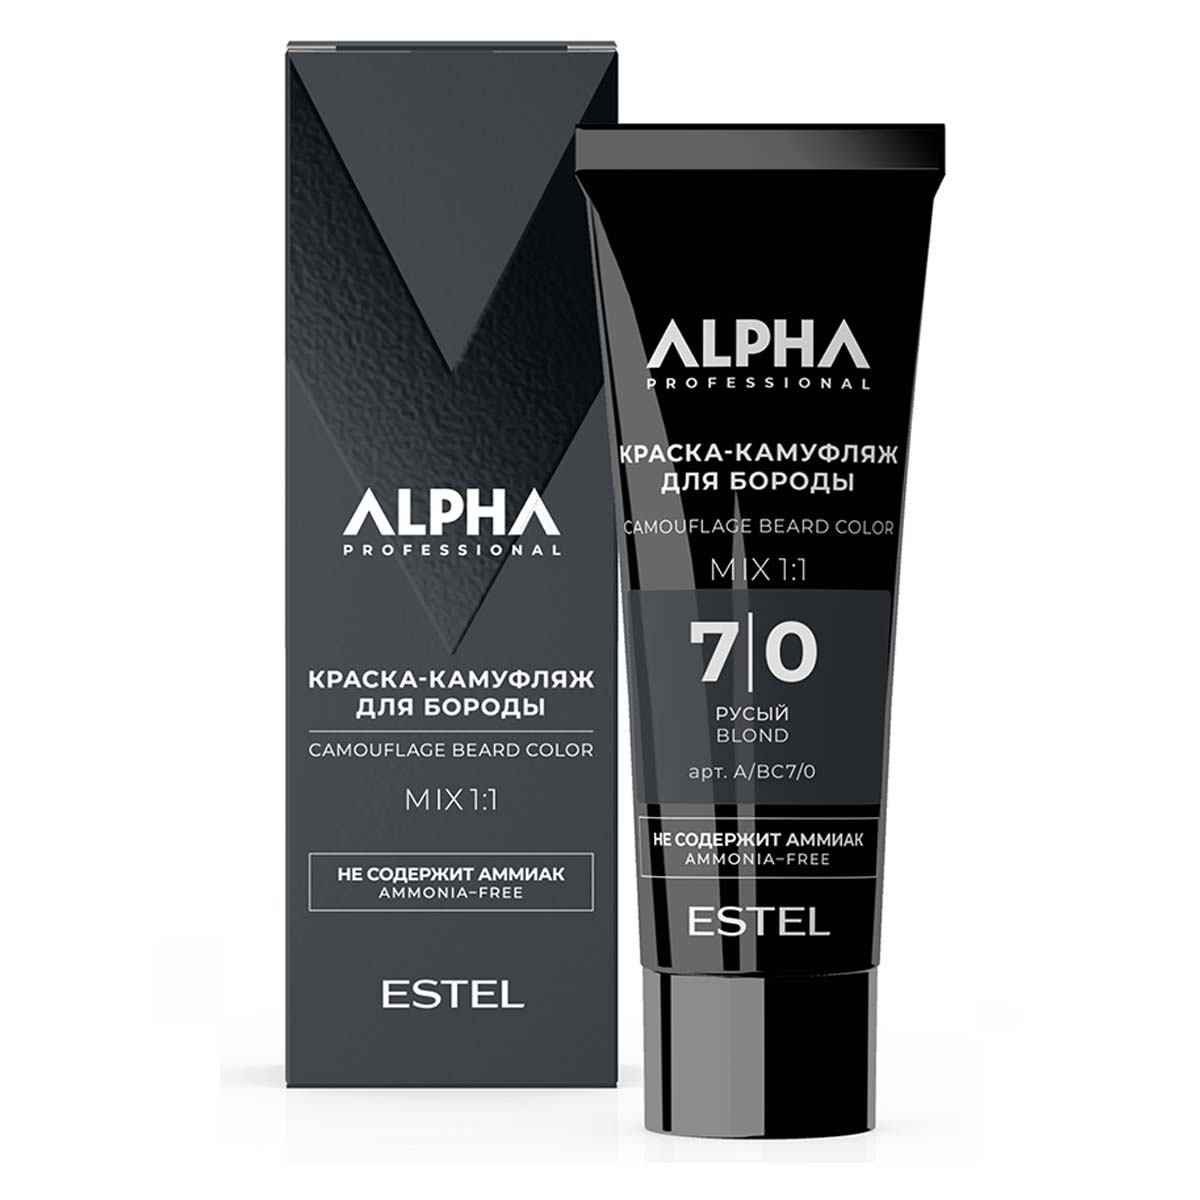 Крем-камуфляж для окрашивания бороды ESTEL PROFESSIONAL Alpha Homme 7.0 русый 40 мл краска камуфляж для бороды alpha ah s7 08 8 0 светло русый 1 шт